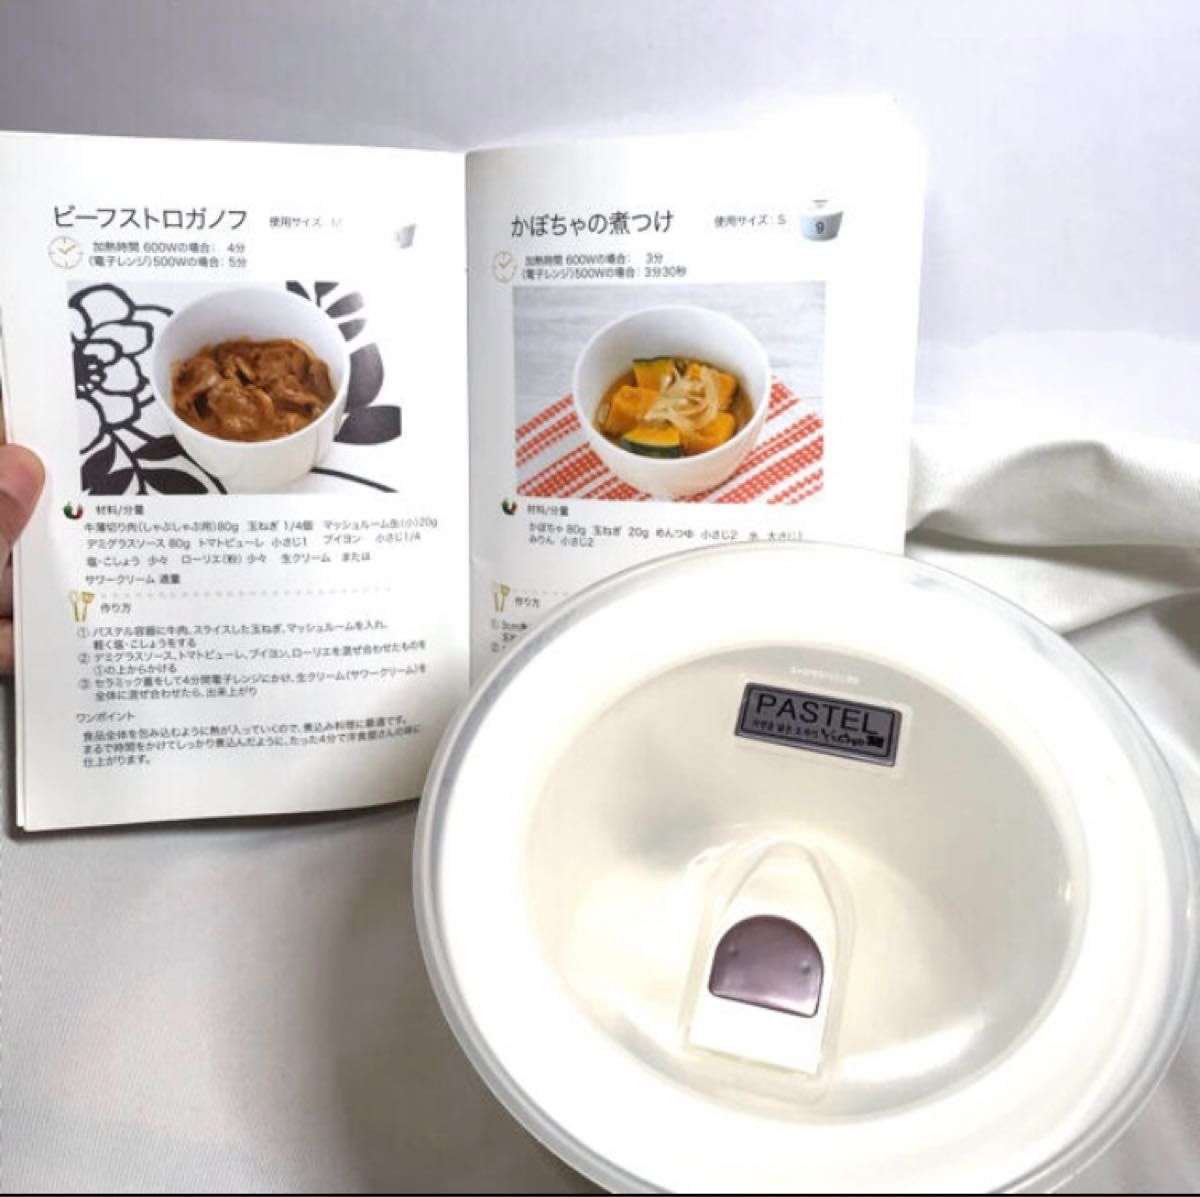 【未使用】SHOPCHANNEL購入セラミック密閉容器電子レンジ・オーブン調理可yedam pastel韓国製ショップチャンネル 